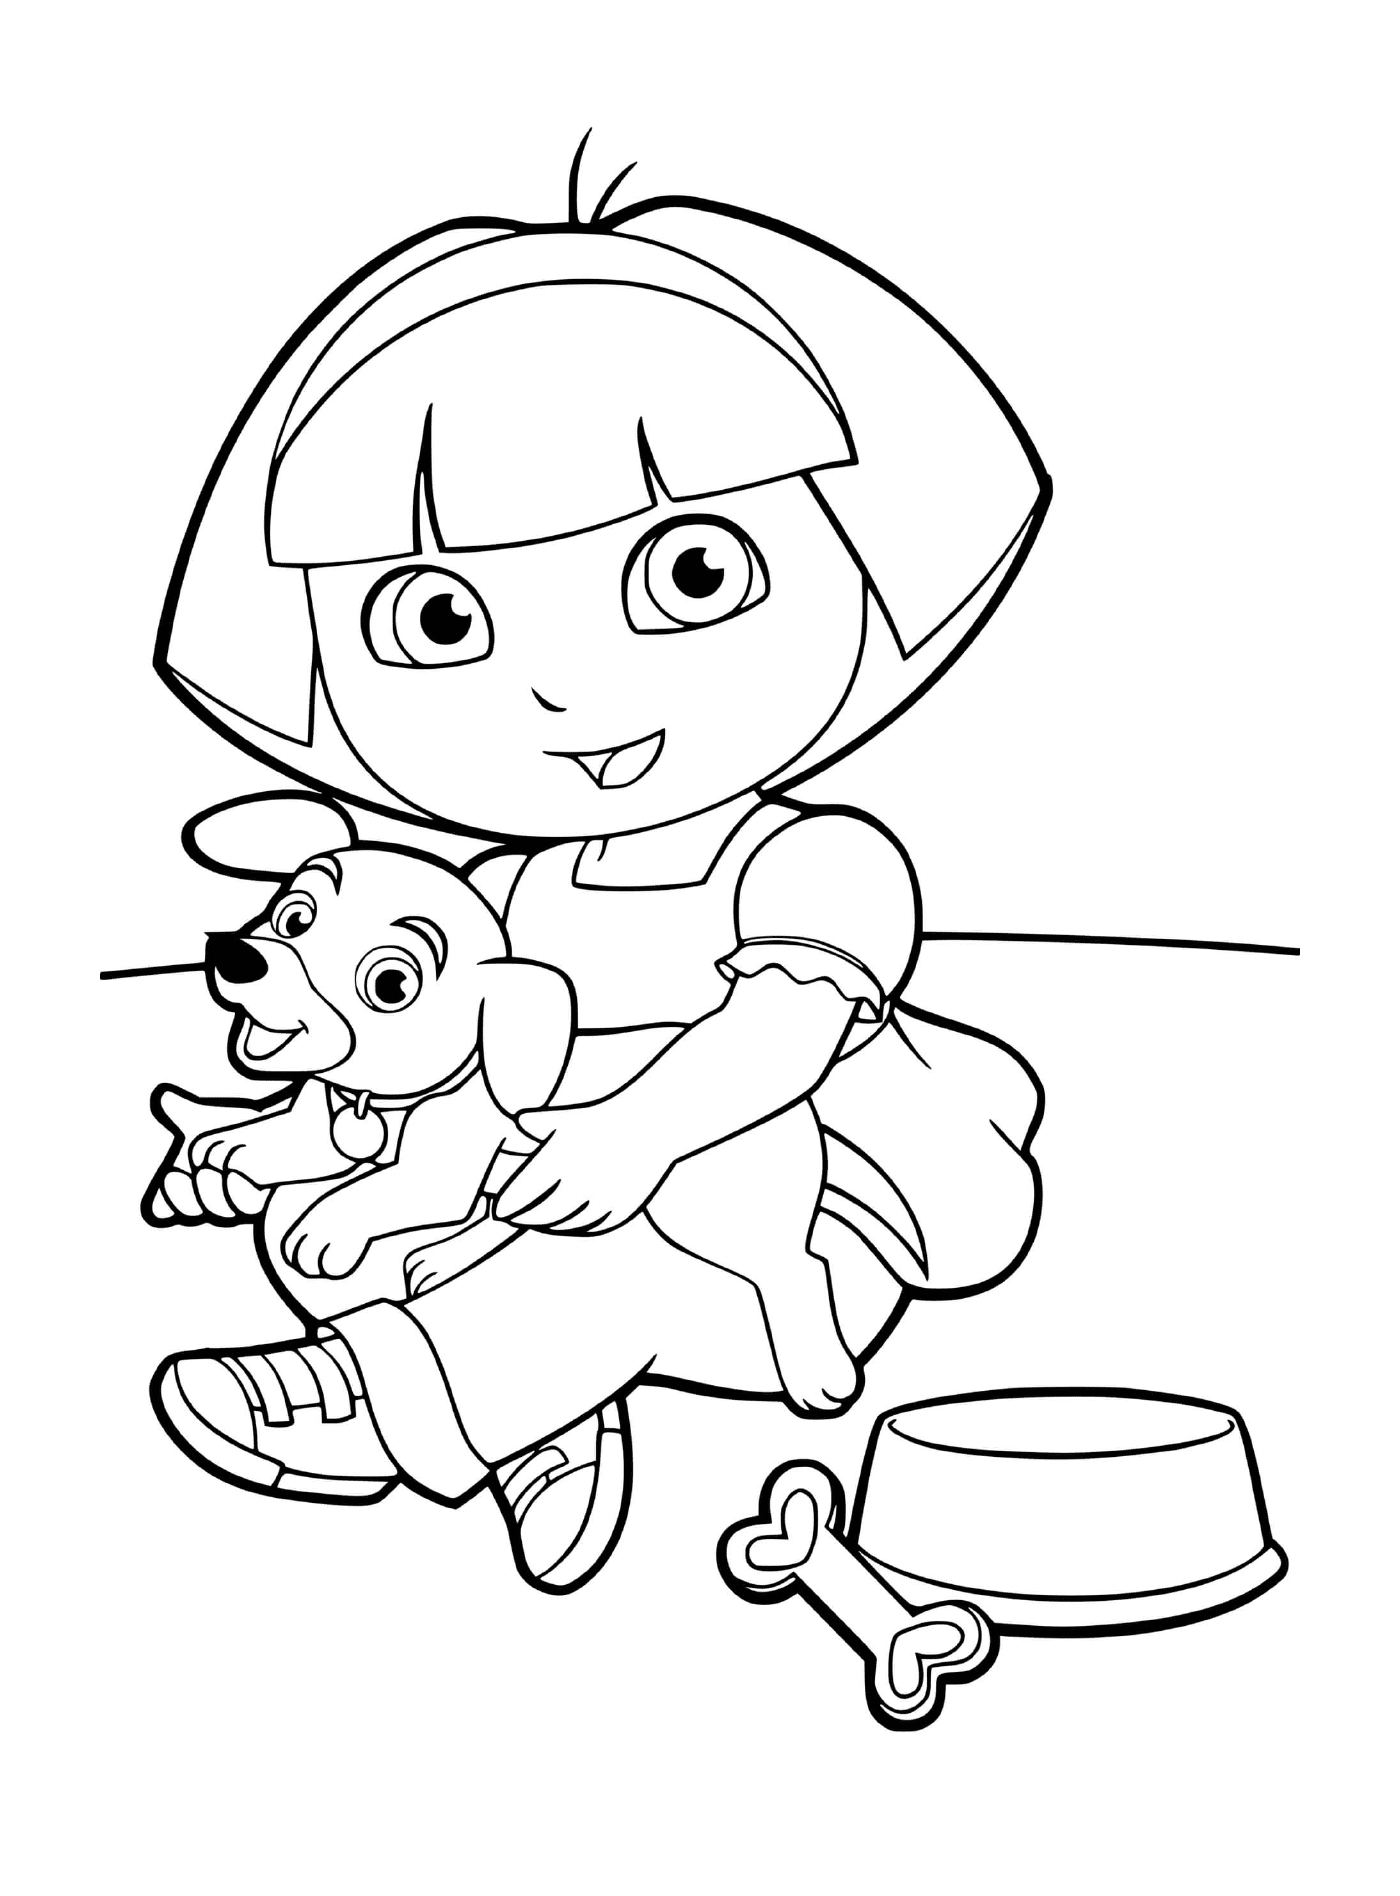  Dora si prende cura del suo adorabile cane 